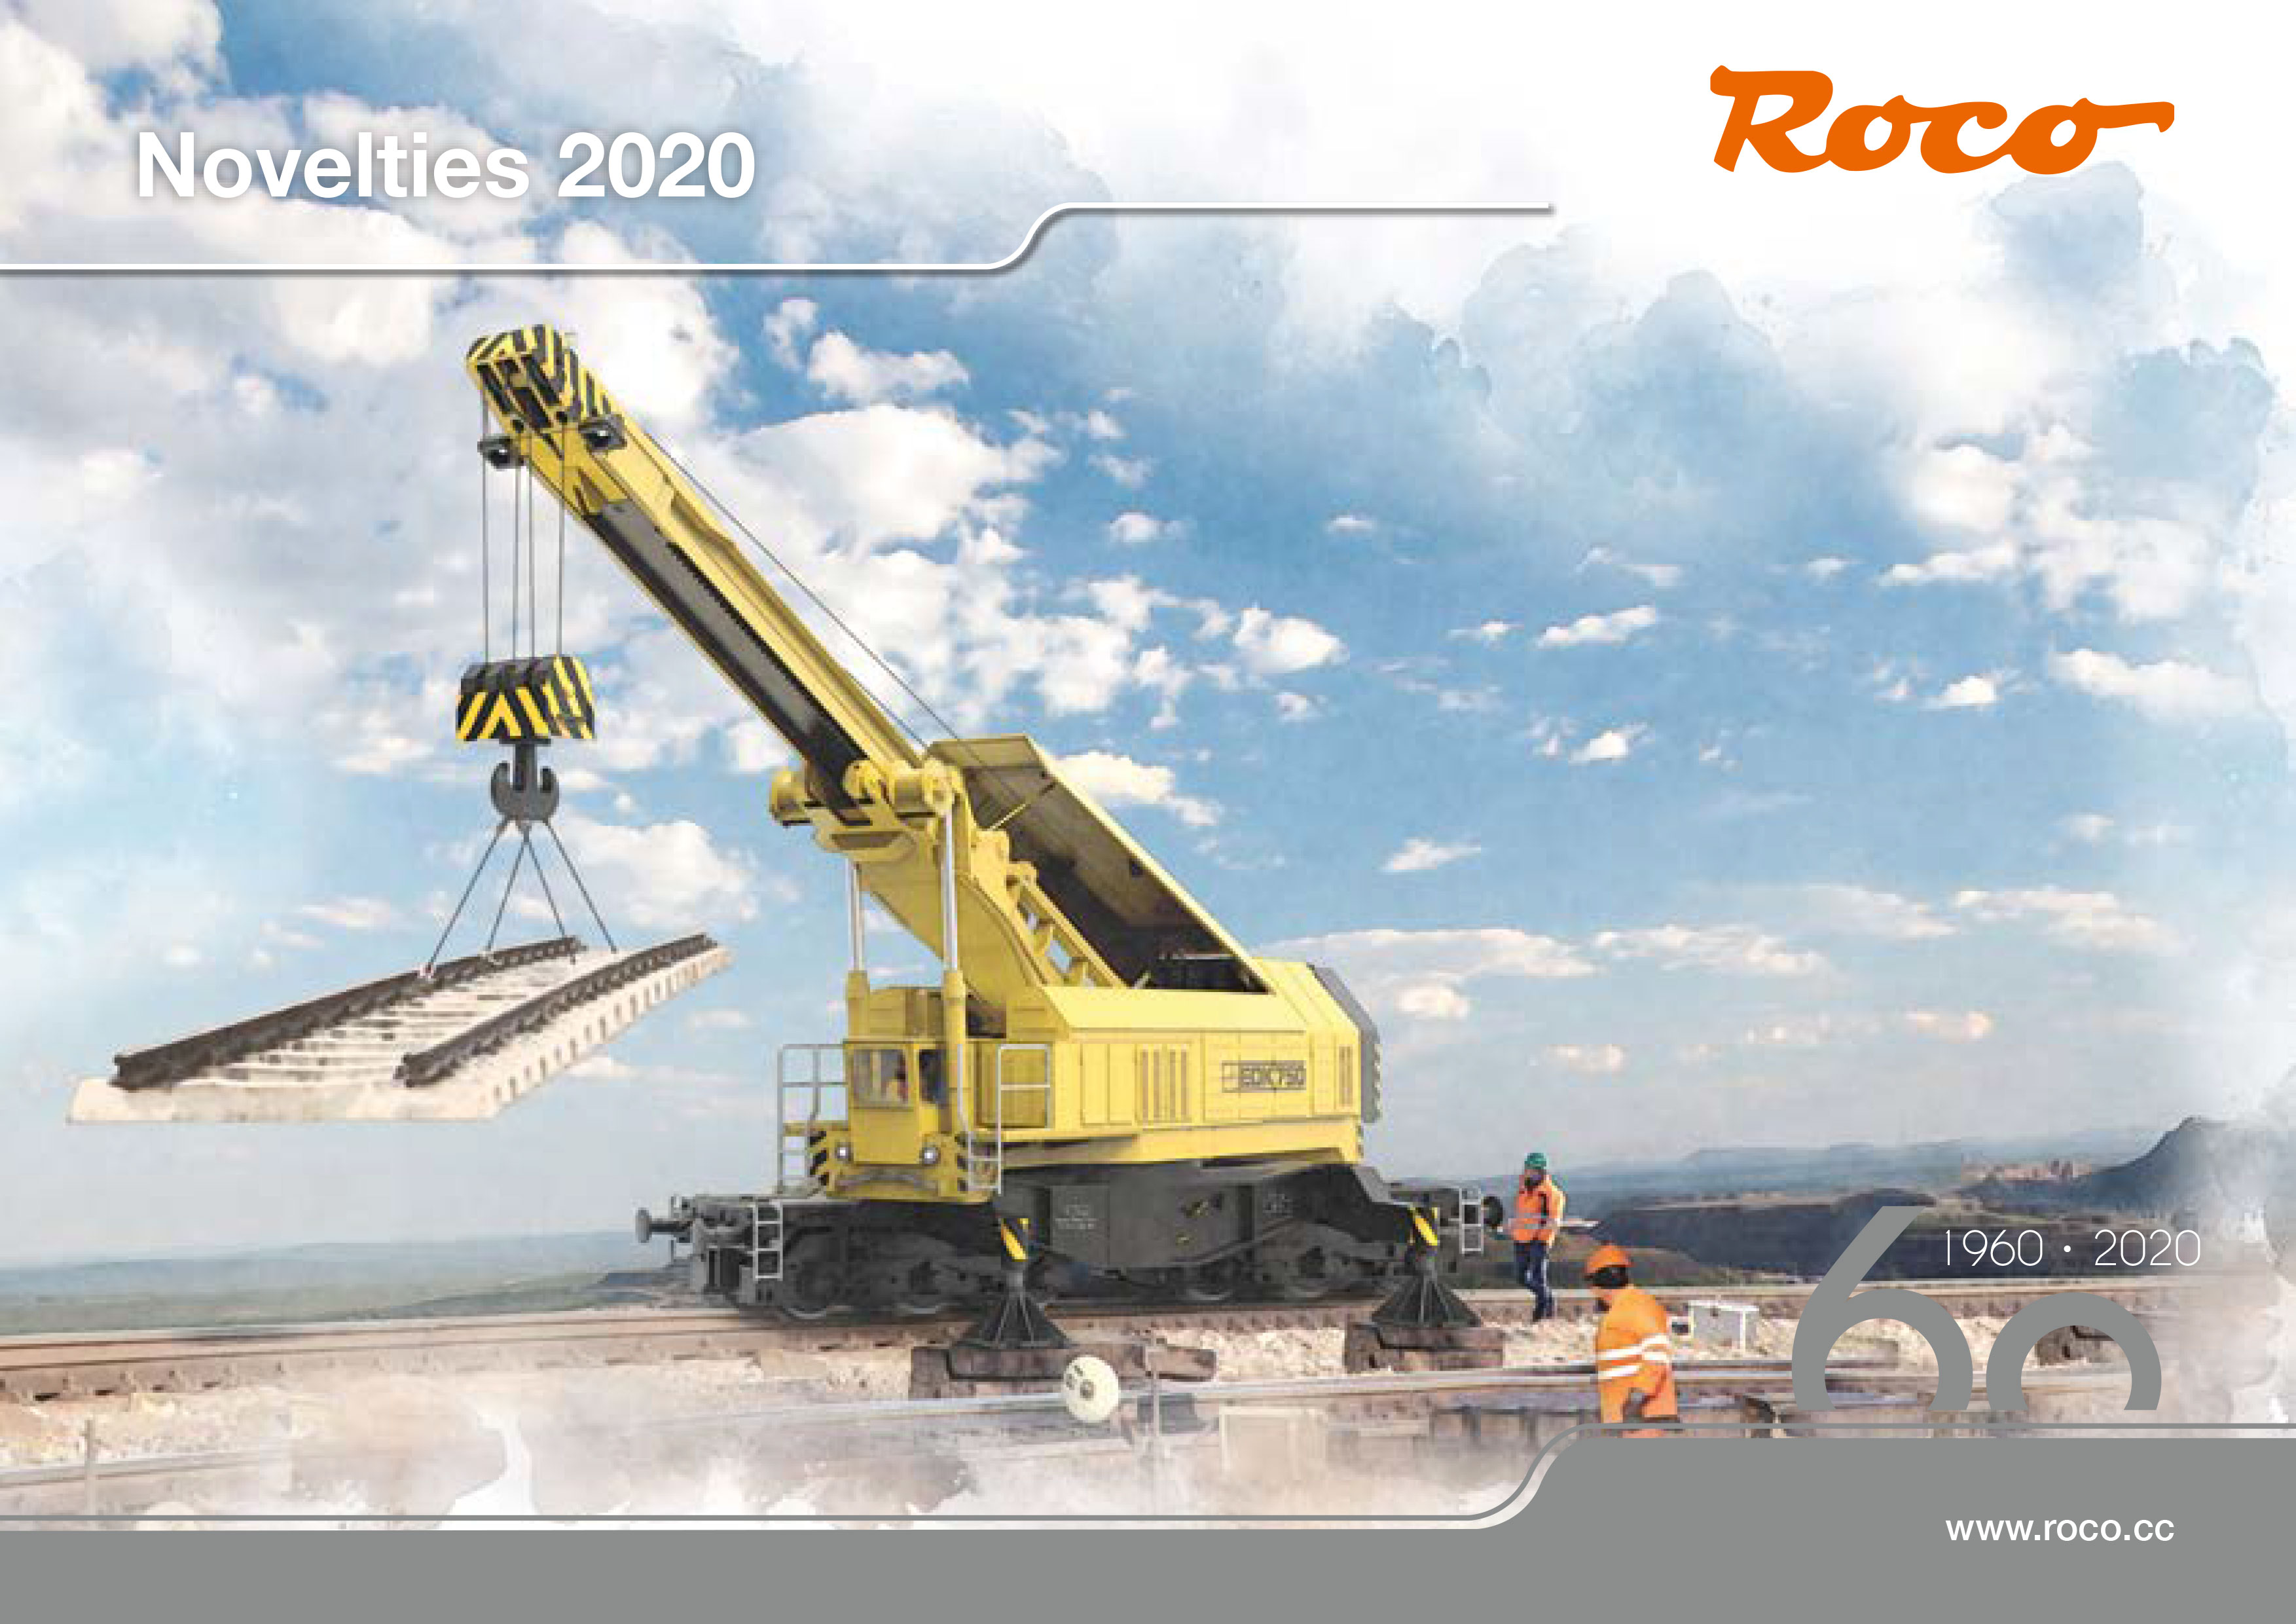 Roco - Novelties 2020 catalog